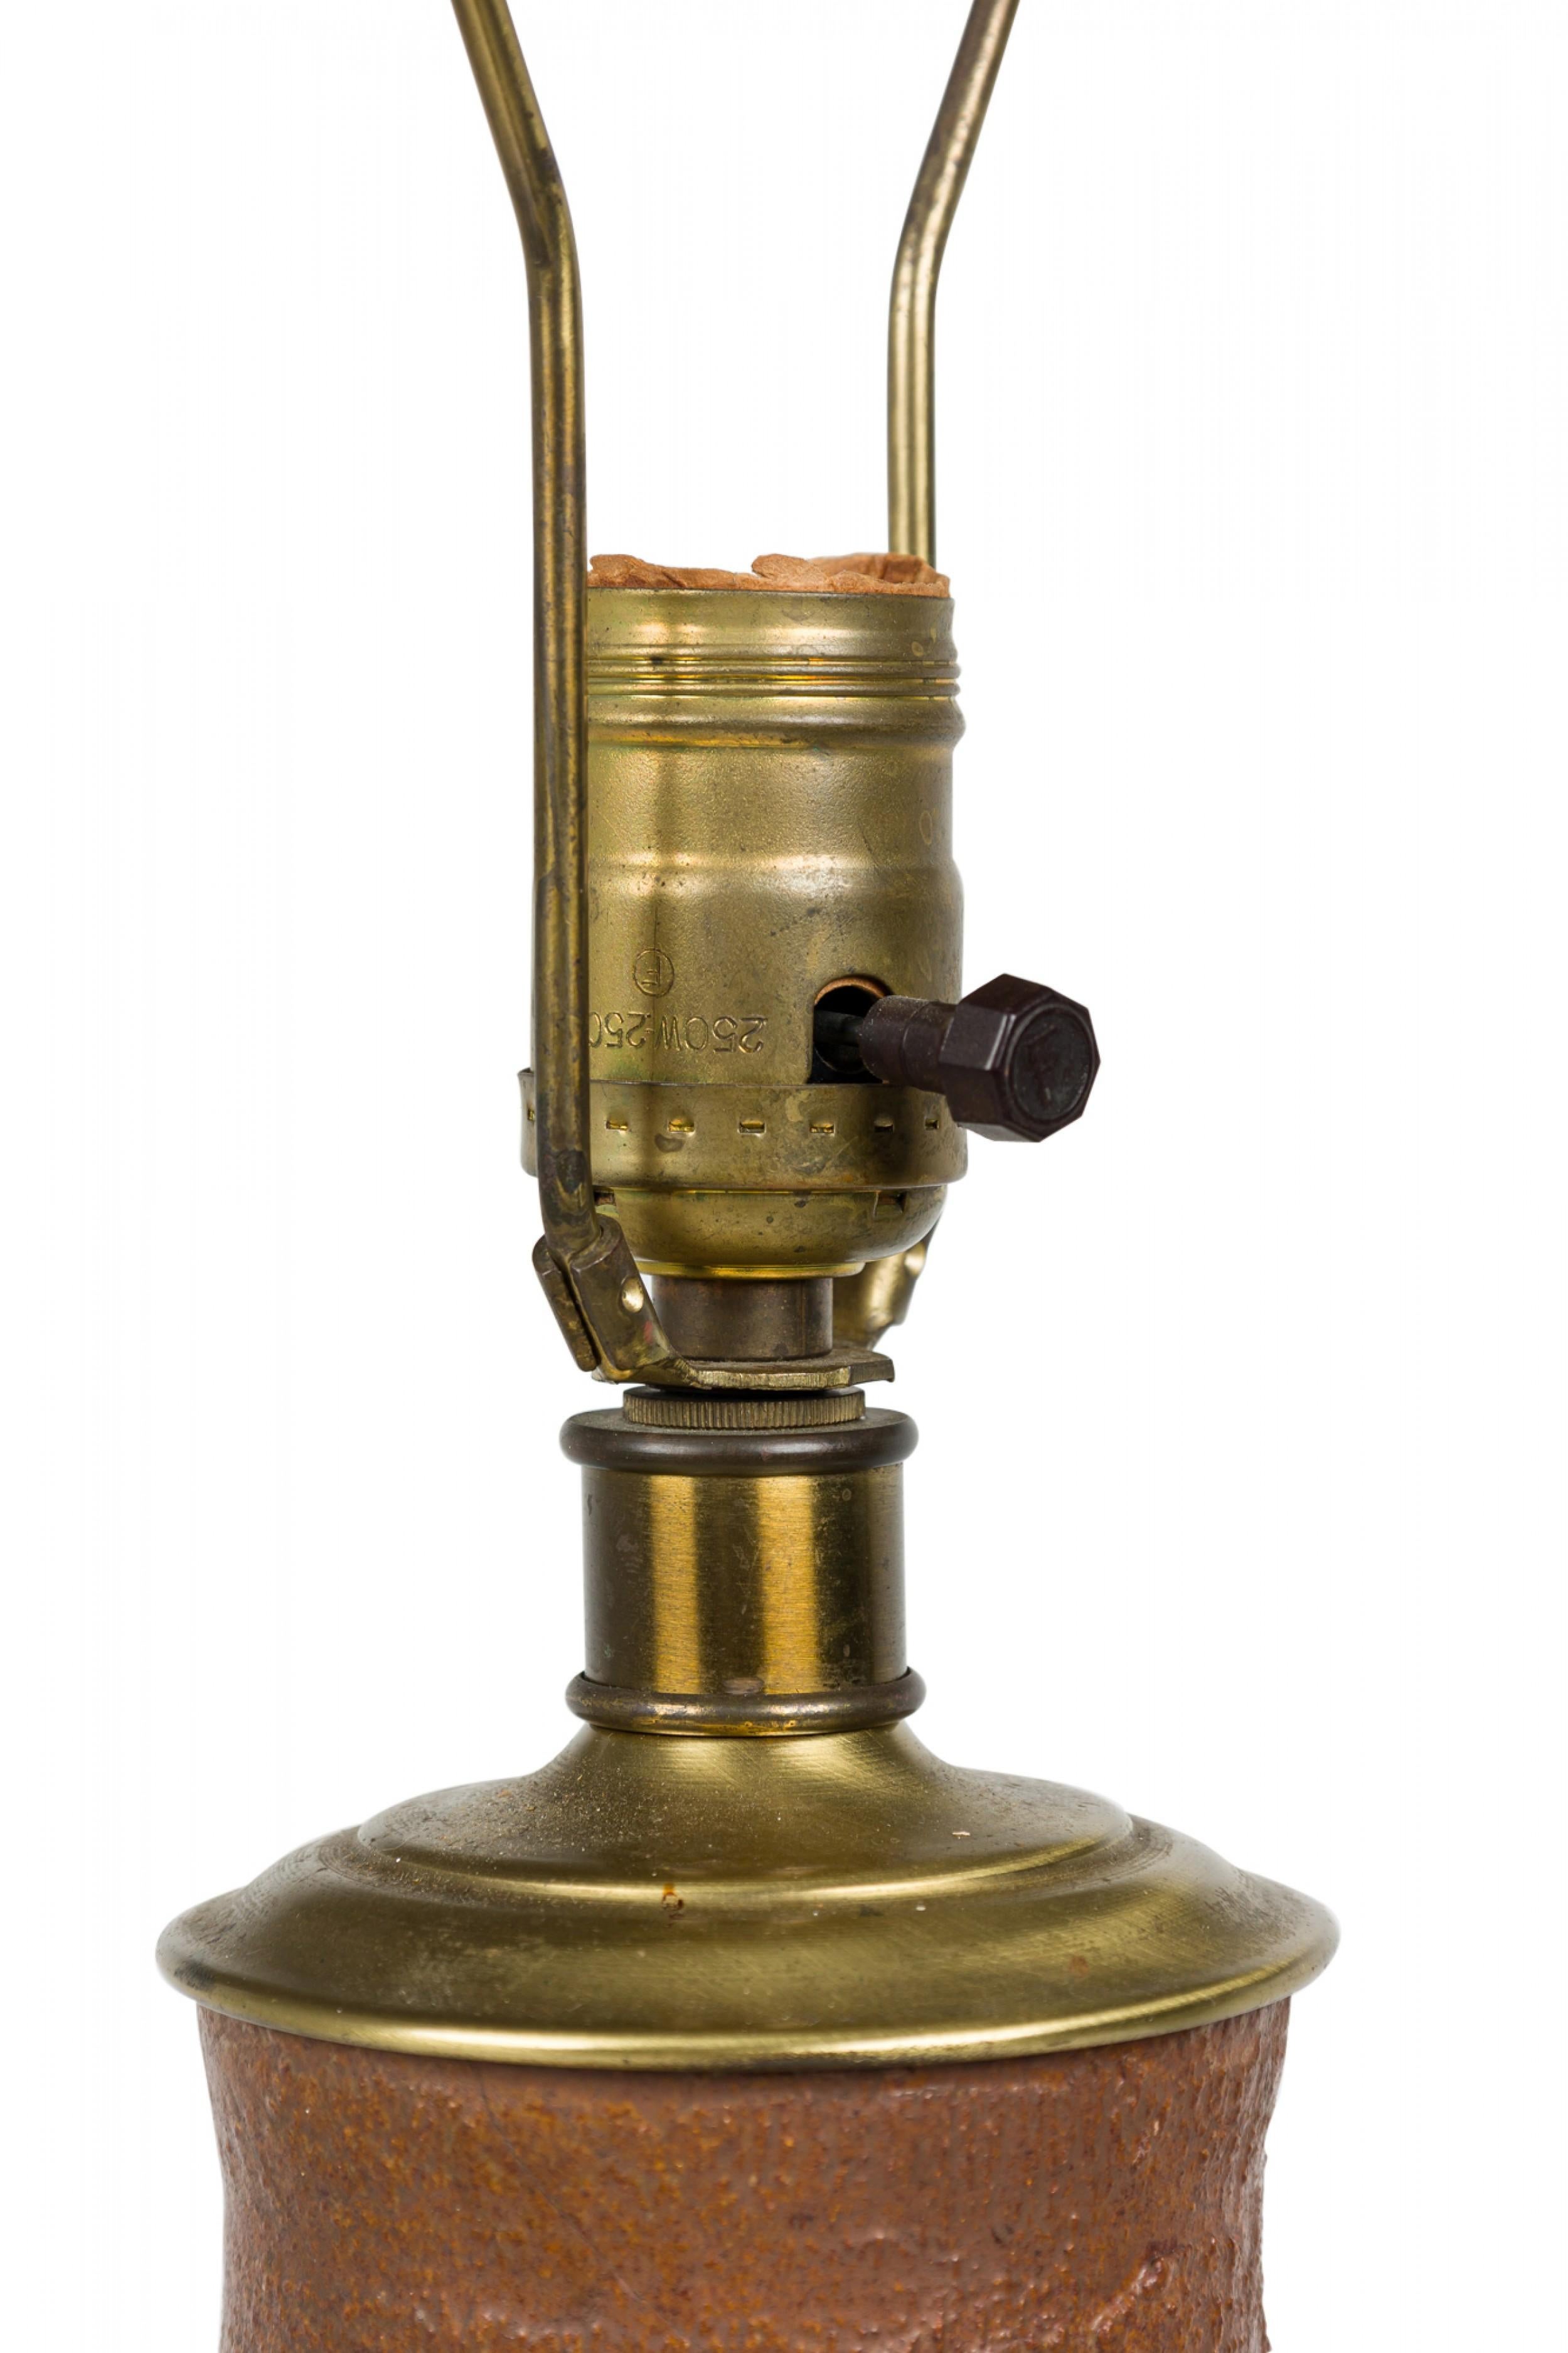 Lampe de table en céramique américaine du milieu du siècle en forme de colonne torpille, surmontée d'une soucoupe en laiton avec harpe, d'un fleuron cylindrique et d'une prise pour interrupteur fonctionnant, cuite dans une glaçure texturée mate brun